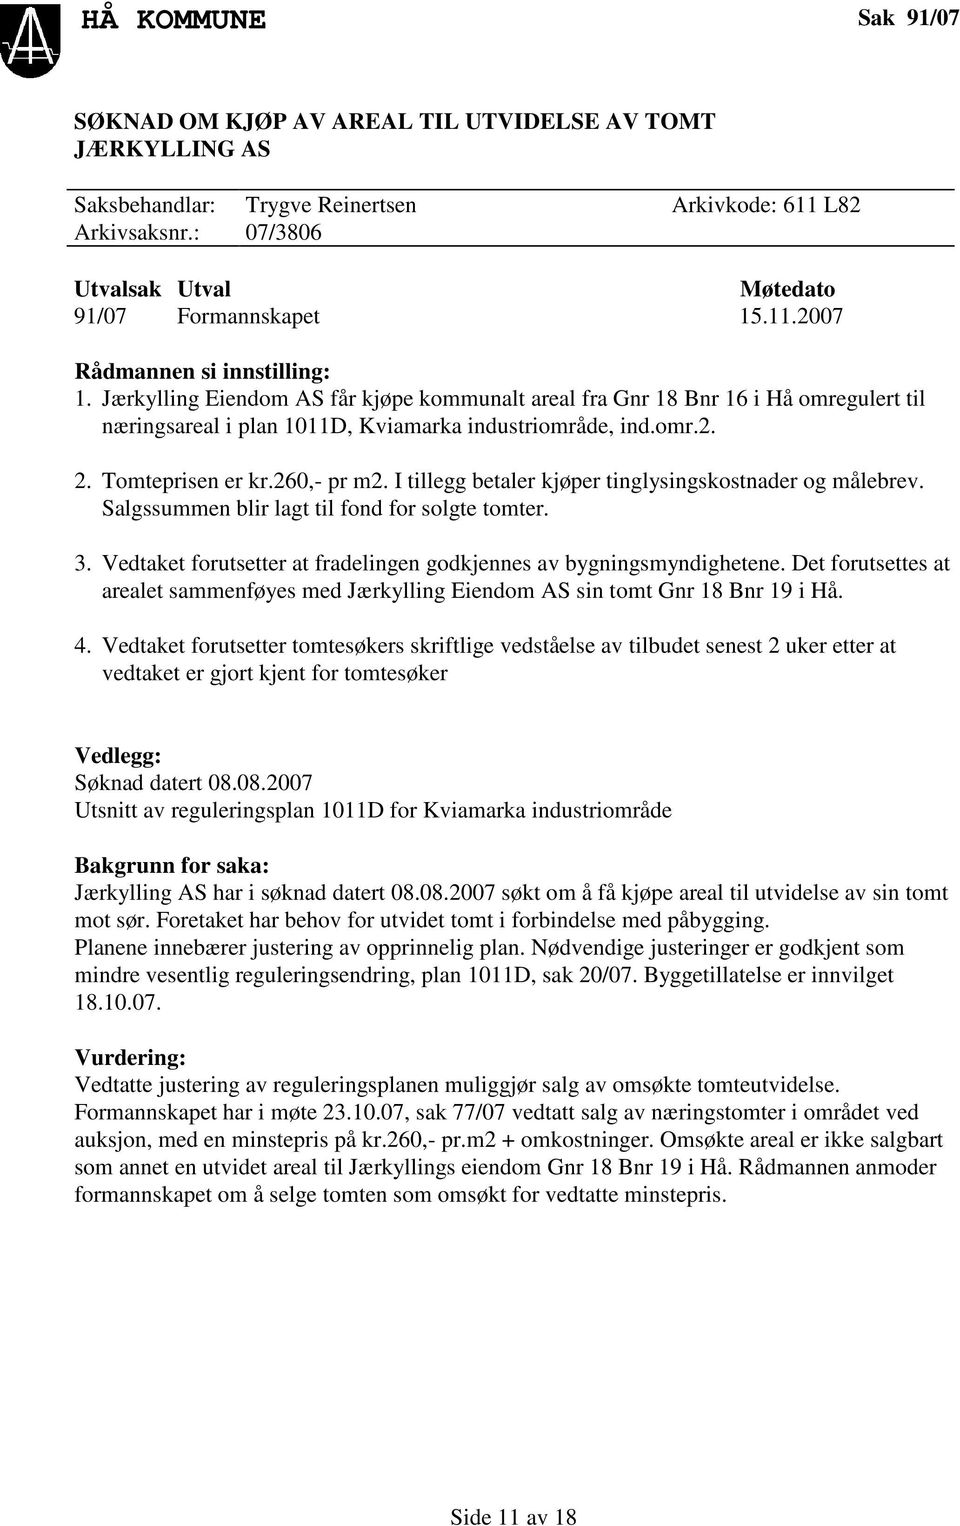 Jærkylling Eiendom AS får kjøpe kommunalt areal fra Gnr 18 Bnr 16 i Hå omregulert til næringsareal i plan 1011D, Kviamarka industriområde, ind.omr.2. 2. Tomteprisen er kr.260,- pr m2.